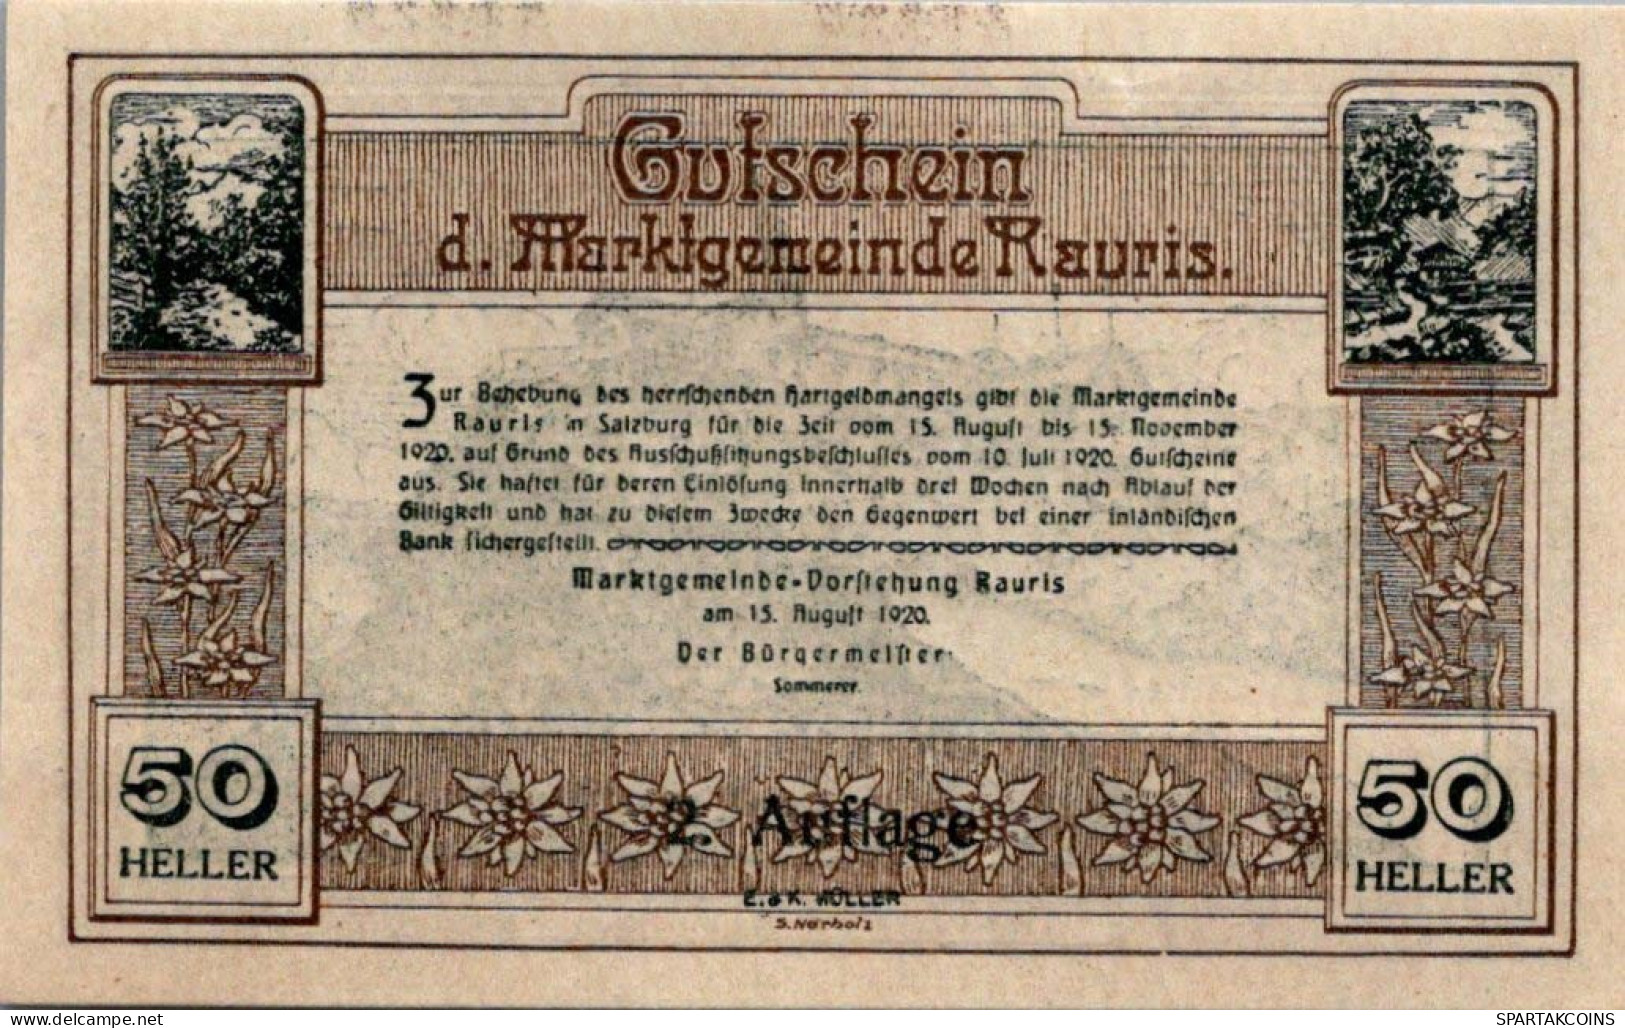 50 HELLER 1920 Stadt Rauris Salzburg Österreich Notgeld Banknote #PE554 - [11] Local Banknote Issues